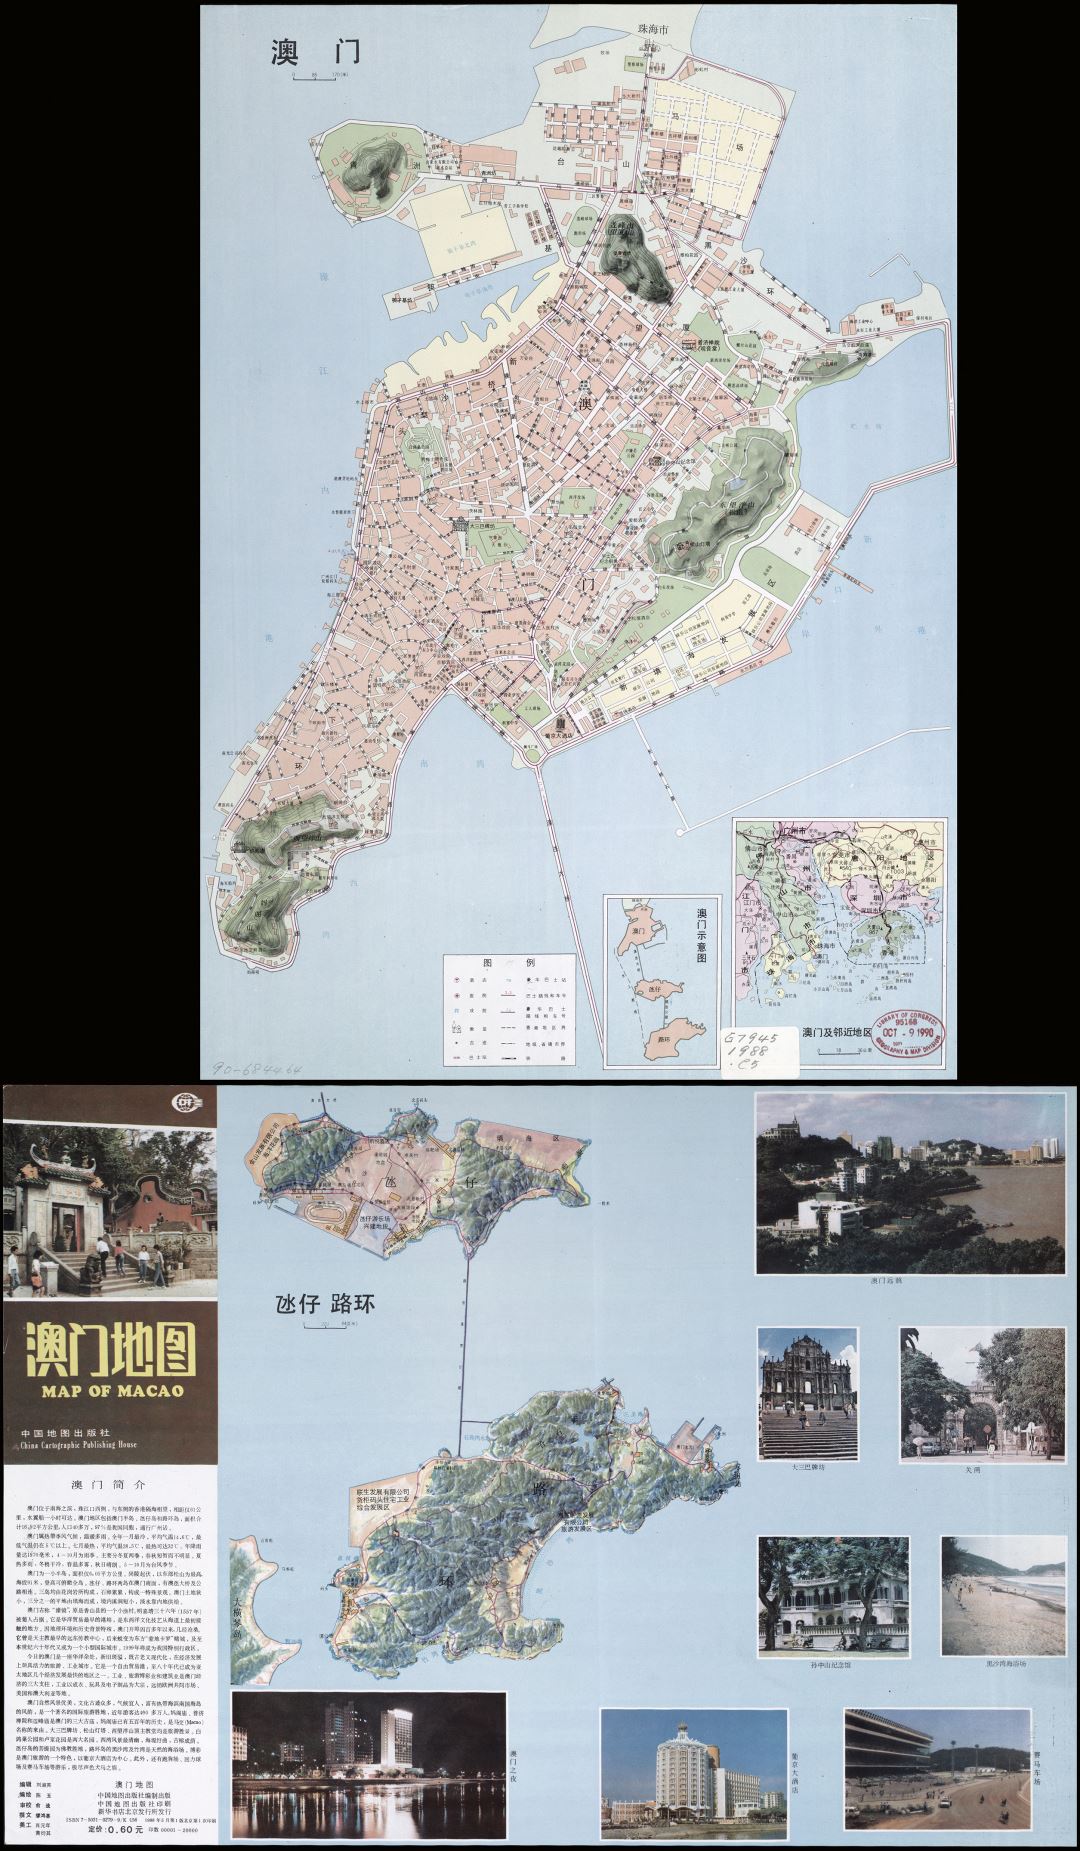 Grande detallado mapa turístico de Macao en chino - 1988